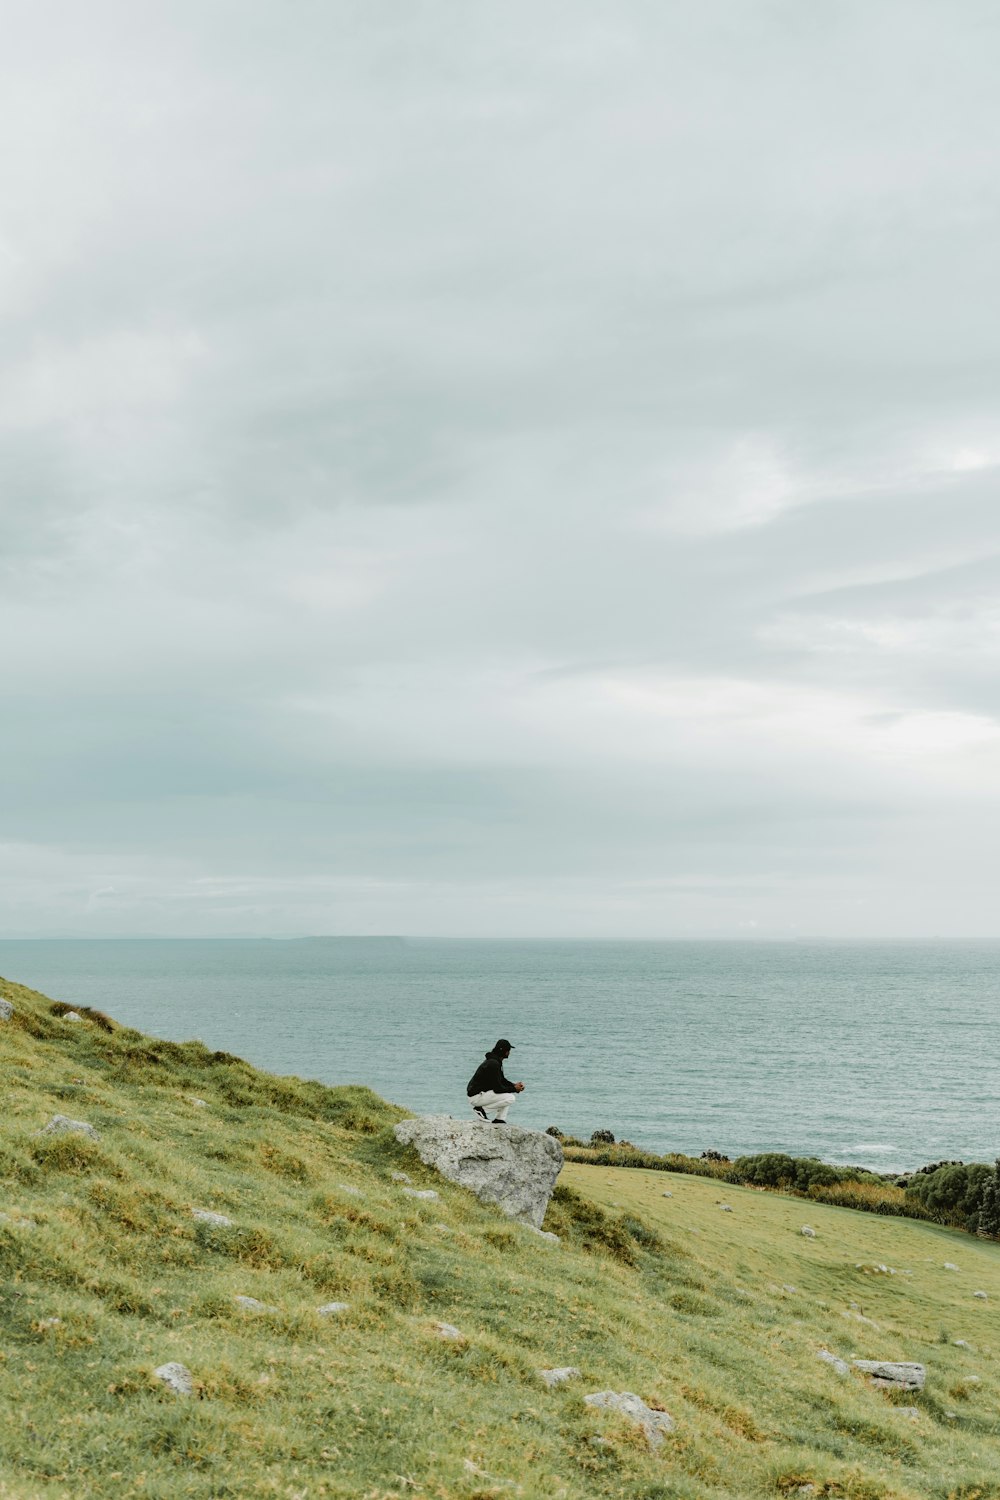 Una persona in piedi su una roccia che si affaccia sull'oceano